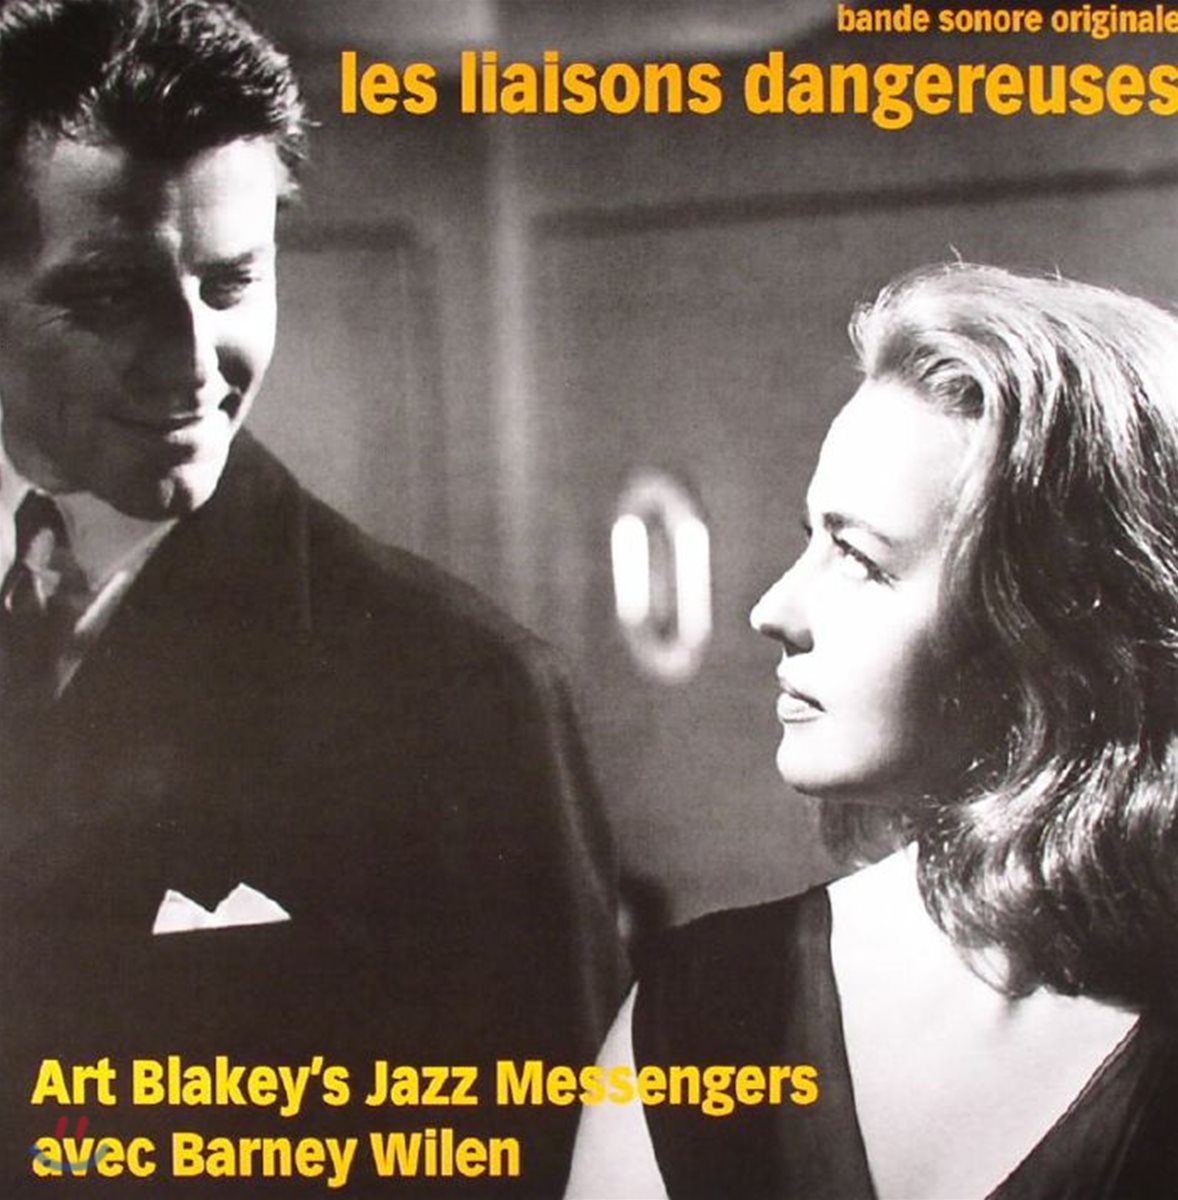 위험한 관계 영화음악 (Les Liaisons Dangereuses OST by Art Blakey's Jazz Messengers, Barney Wilen) [오렌지 컬러 LP]